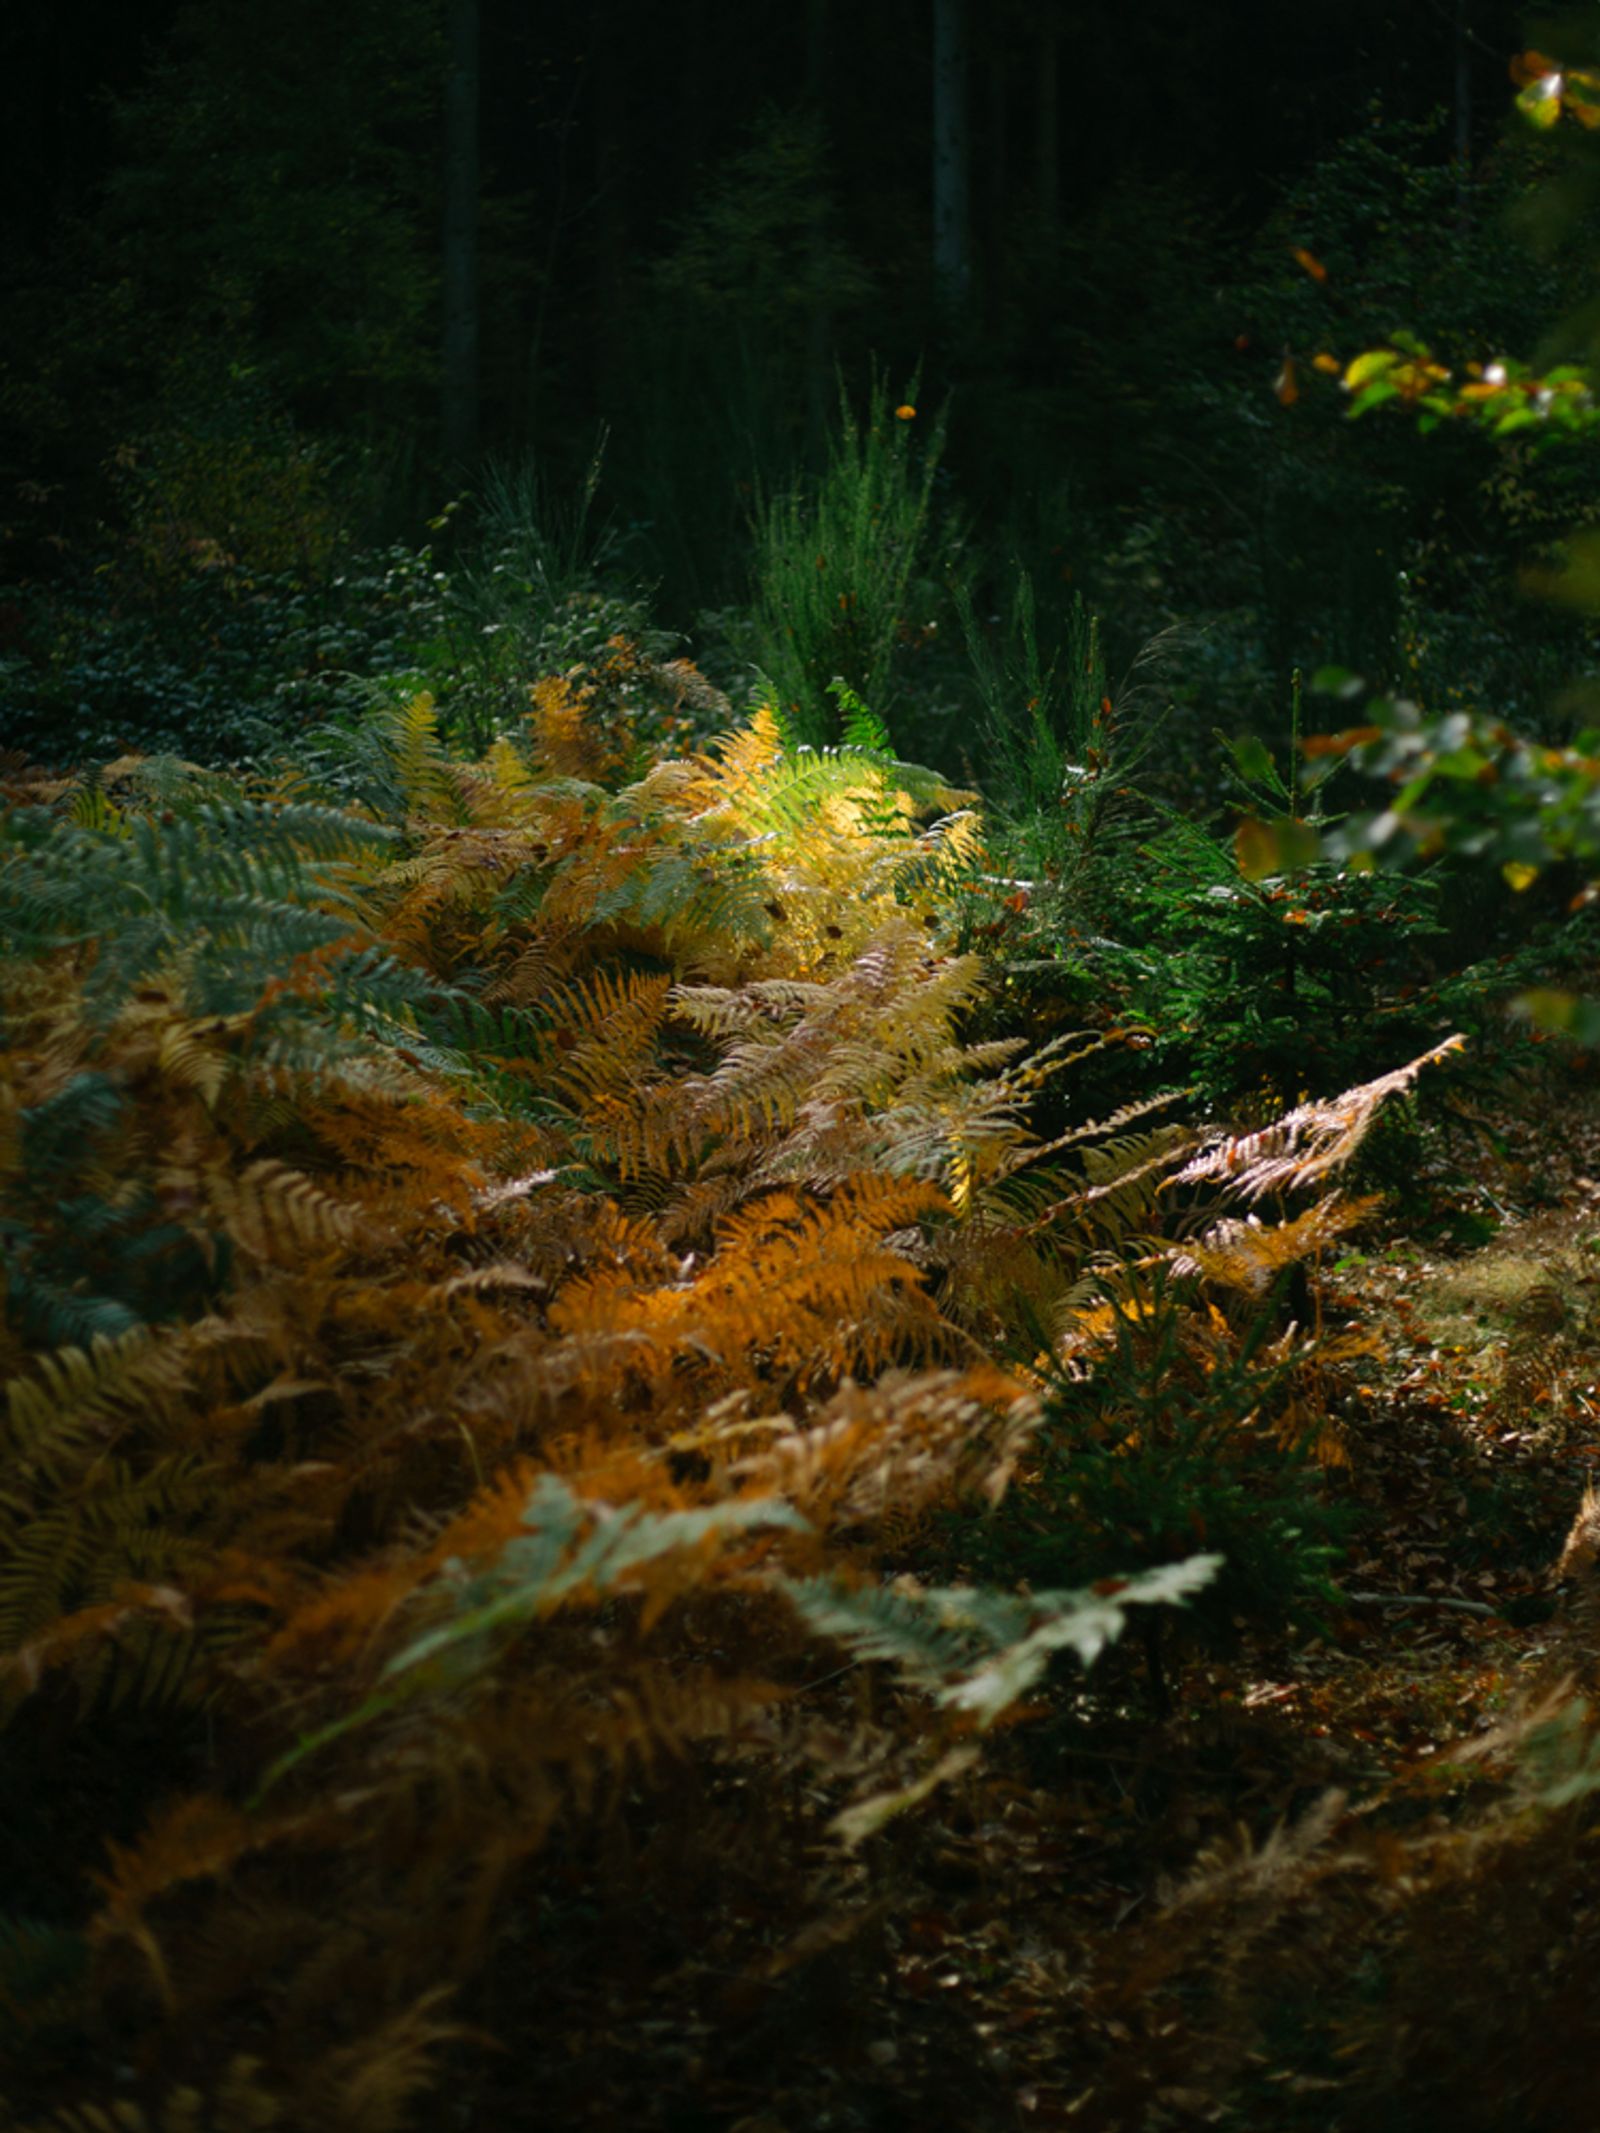 © Lea Franke - "Fern in the woods"